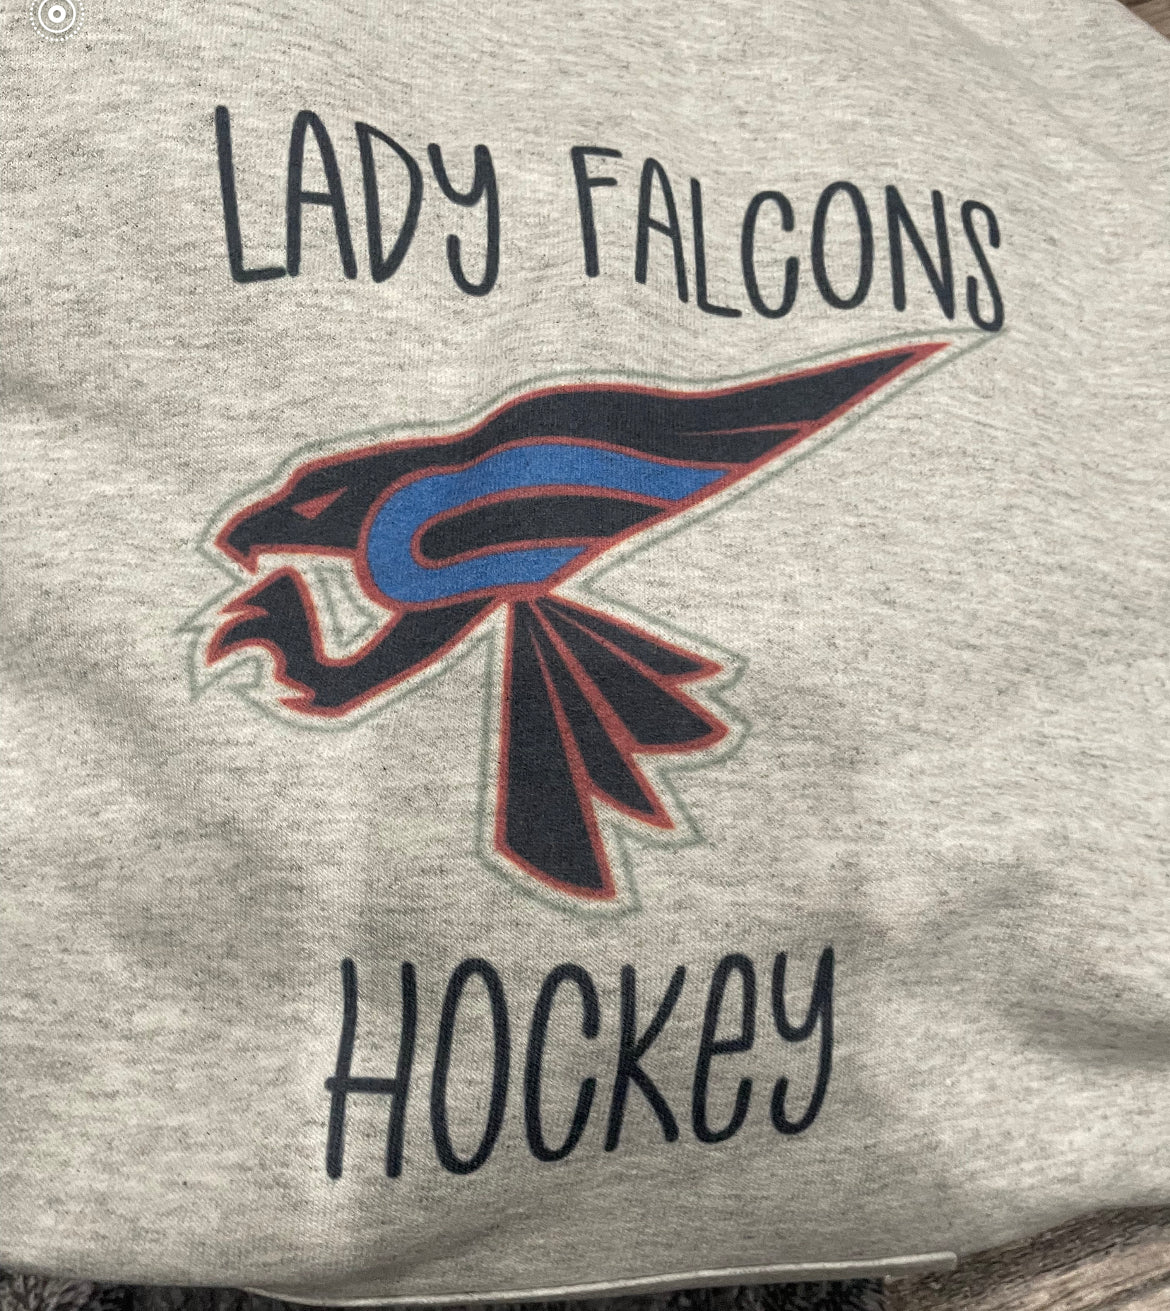 Lady Falcons Hockey Shirt